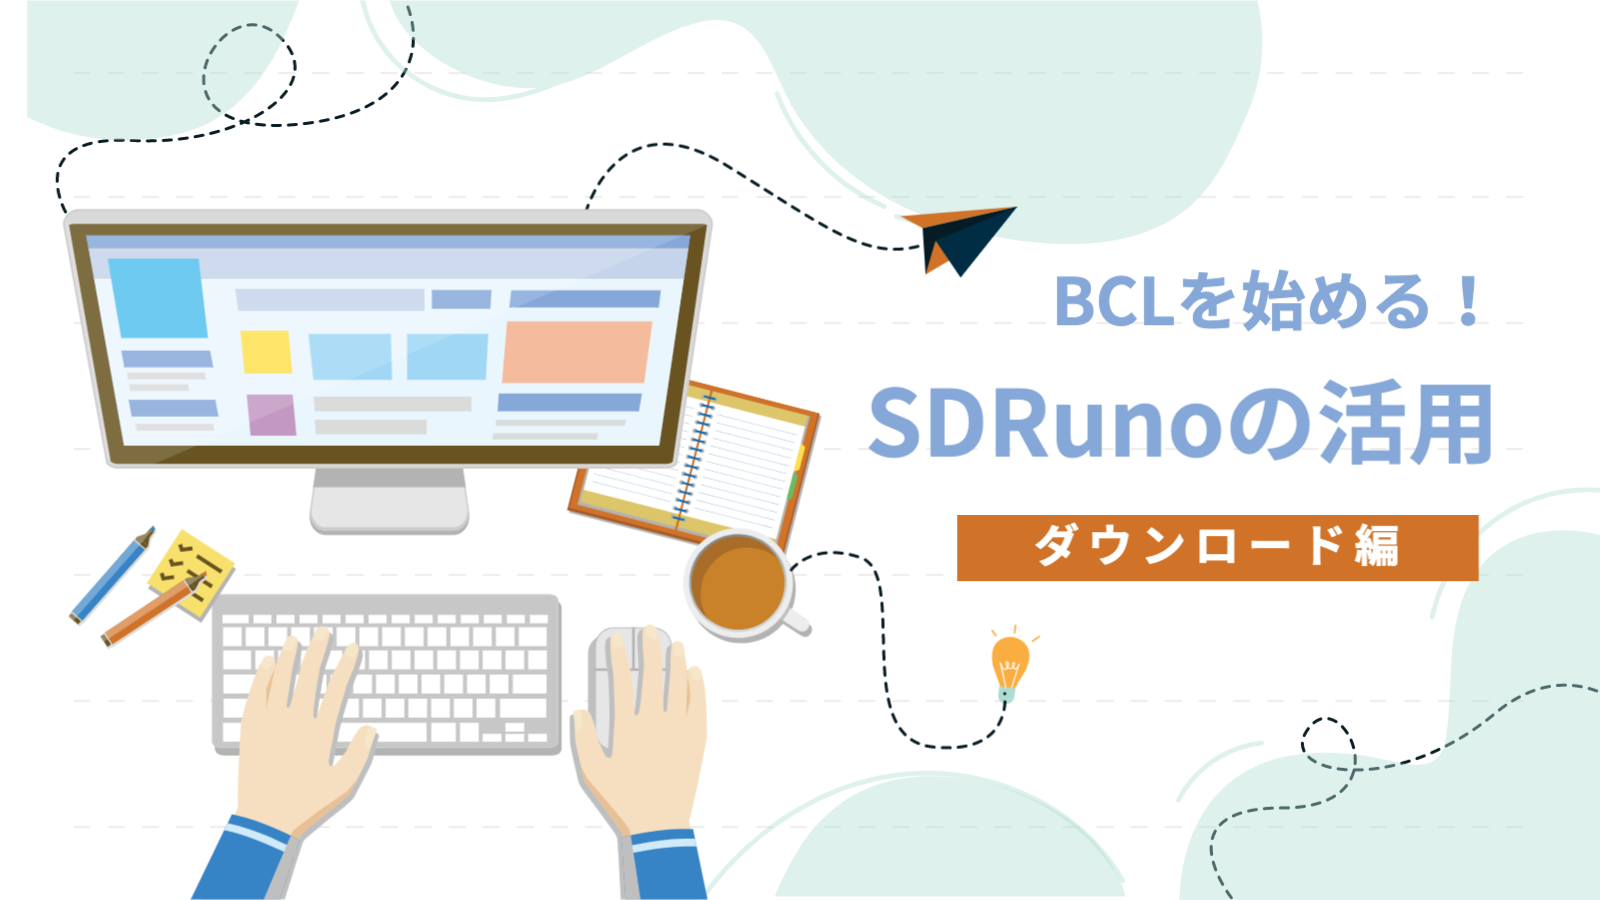 SDRuno ダウンロード download